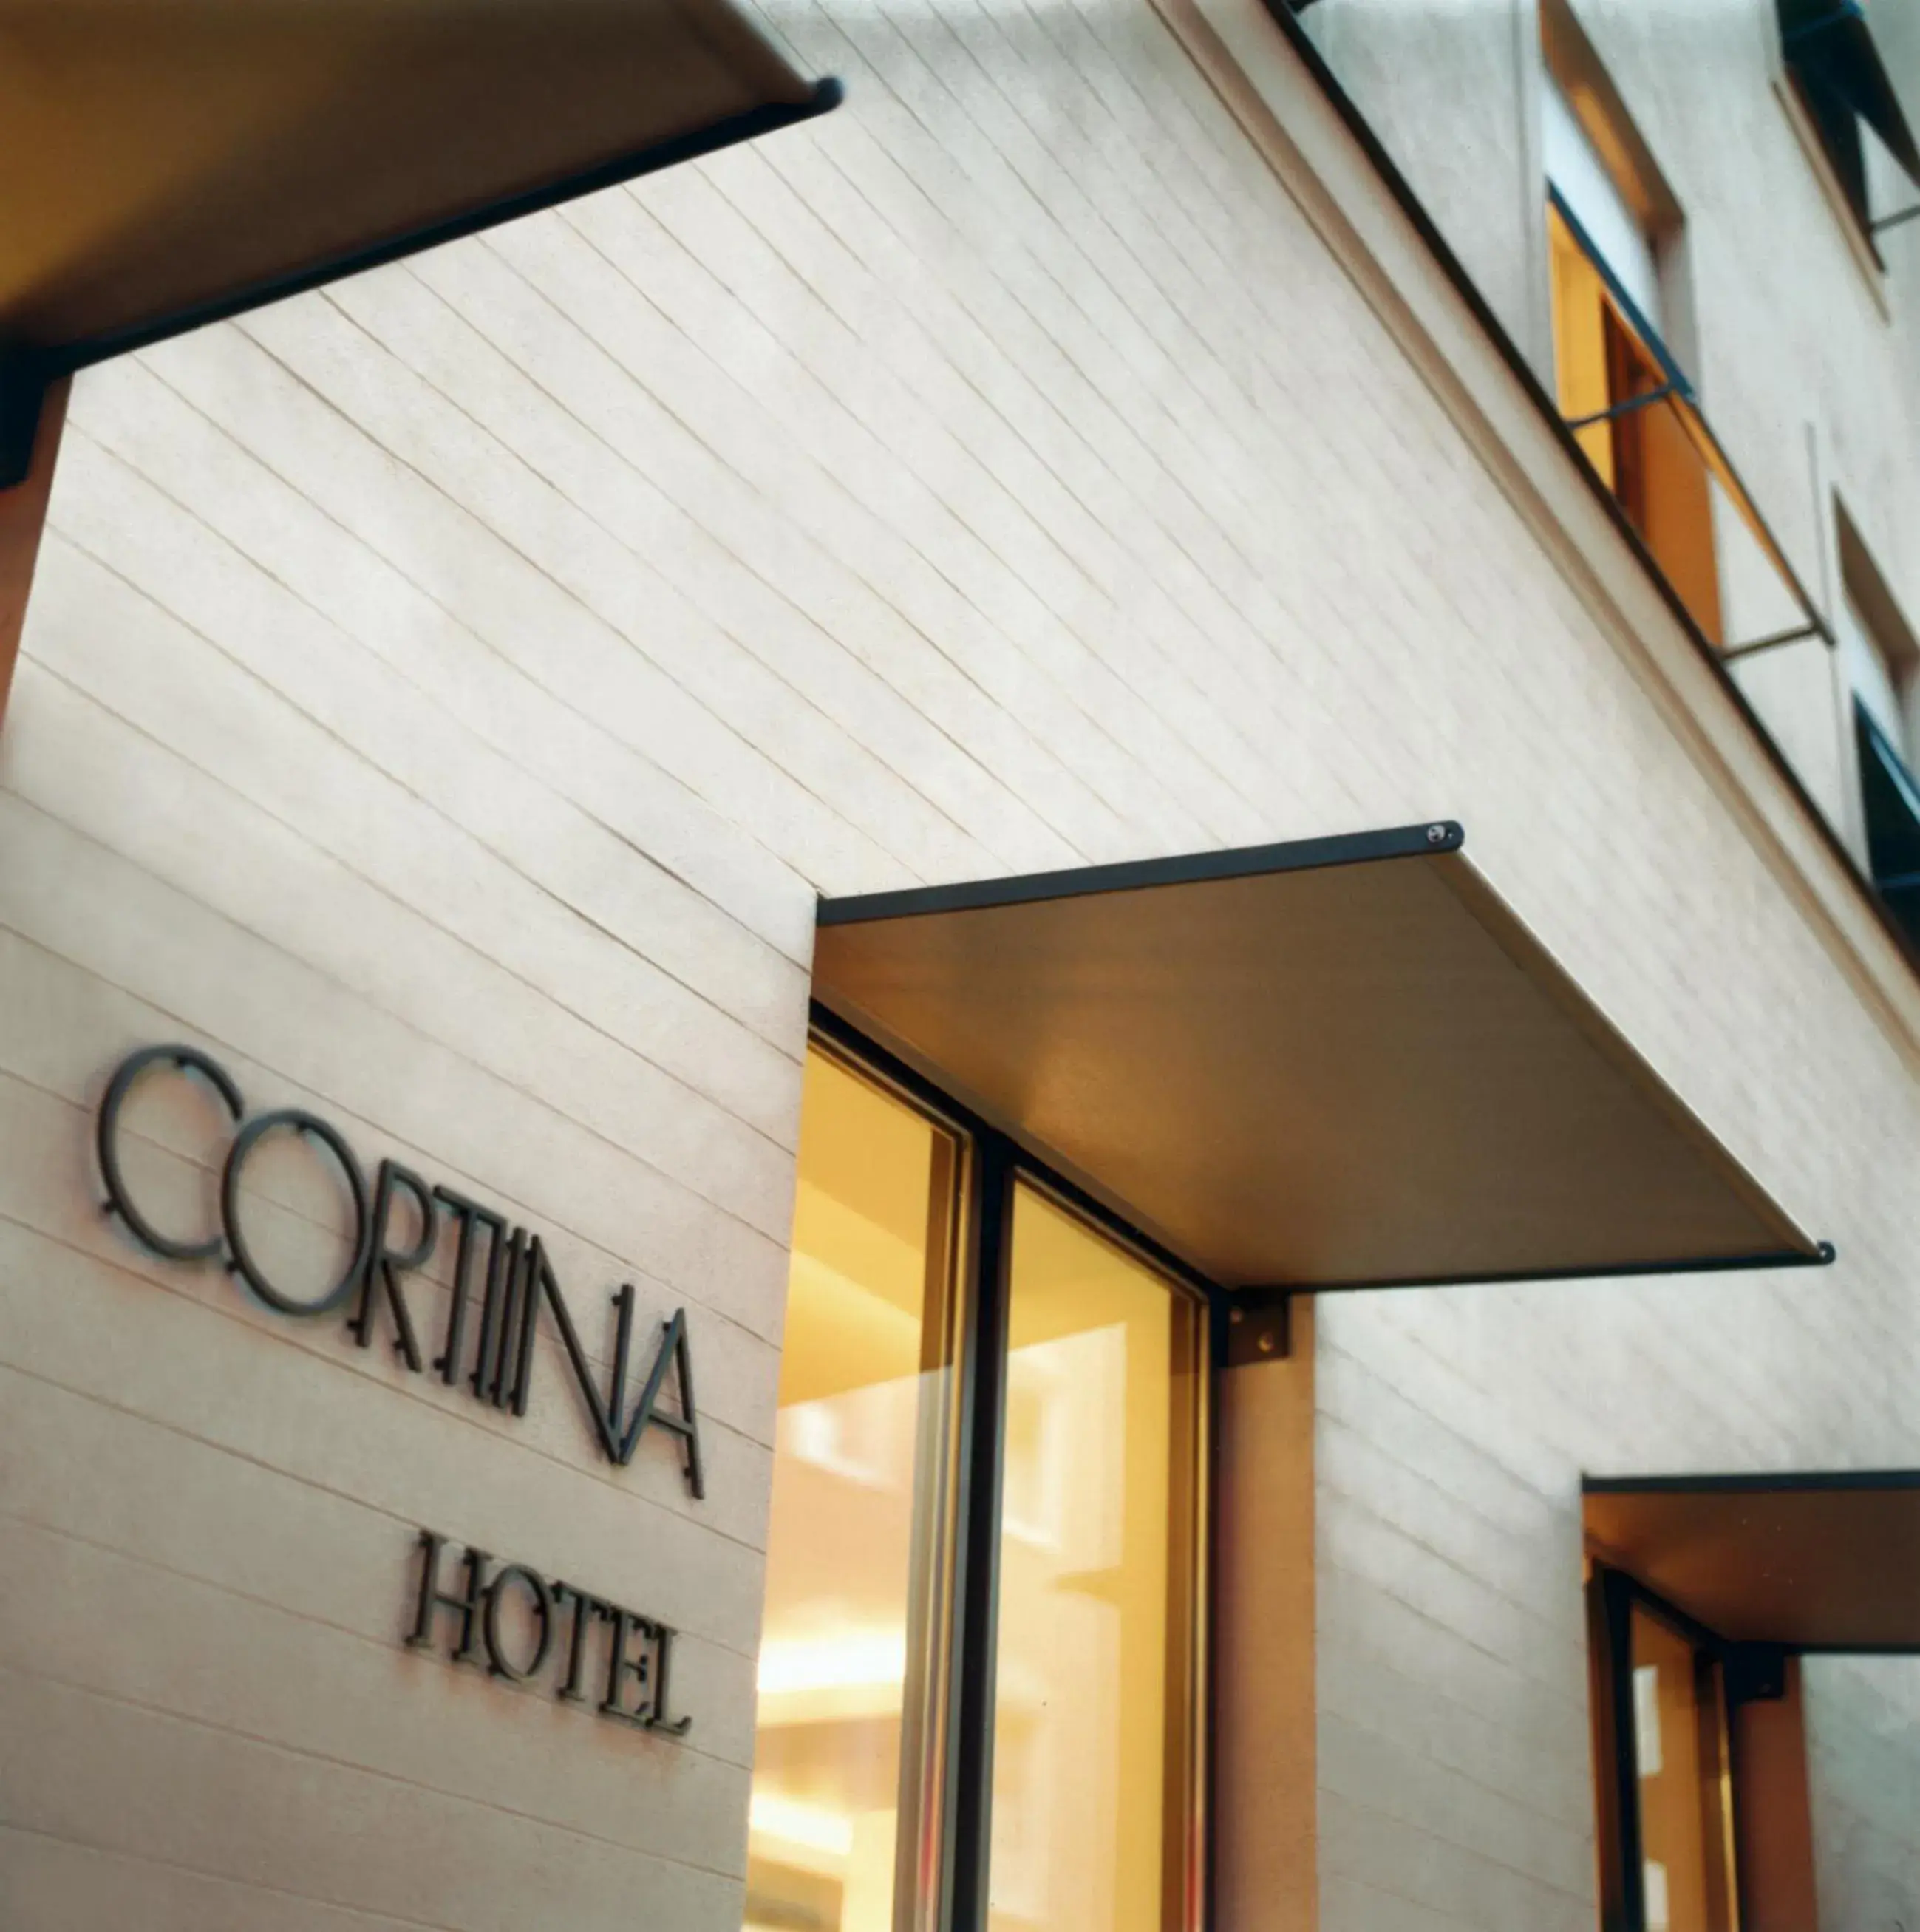 Facade/entrance, Property Logo/Sign in CORTIINA Hotel